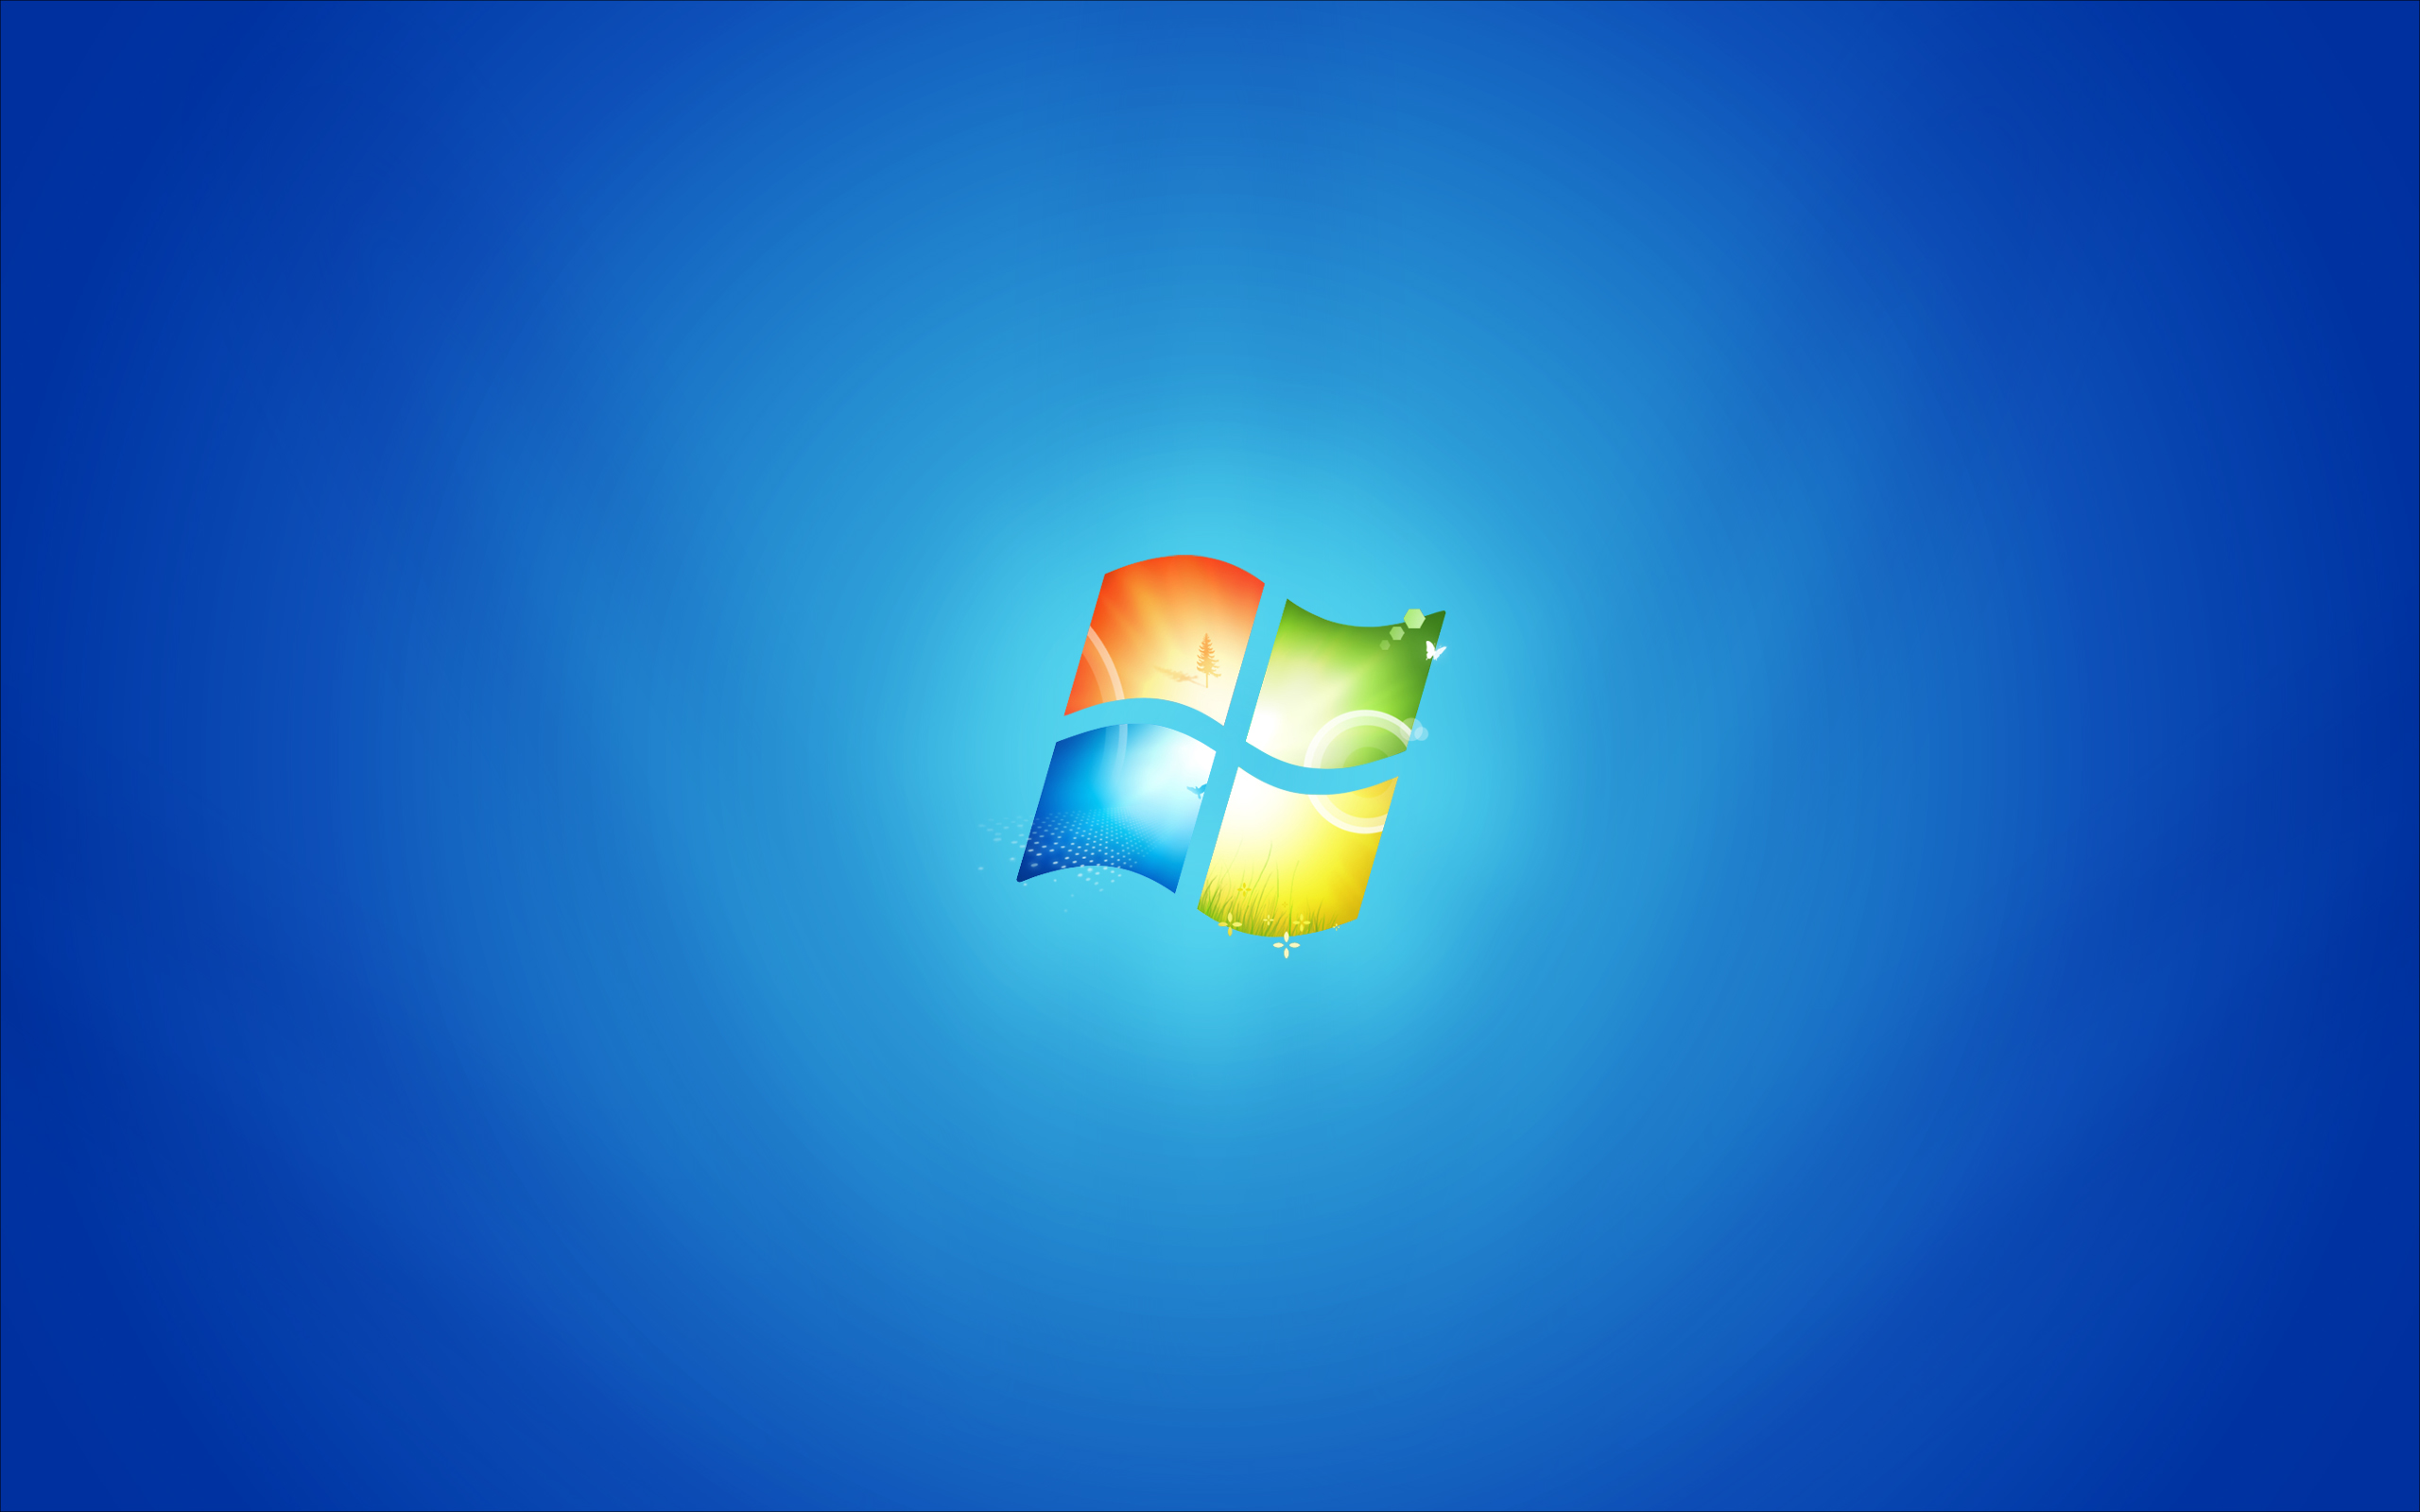 Hình nền Windows 7 mặc định sẽ đưa bạn trở lại với những kỷ niệm thời thơ ấu đầy hồi hộp. Thưởng thức những hình ảnh đẹp và cùng nhau khám phá bản sắc mới của bức tranh nền huyền thoại này.